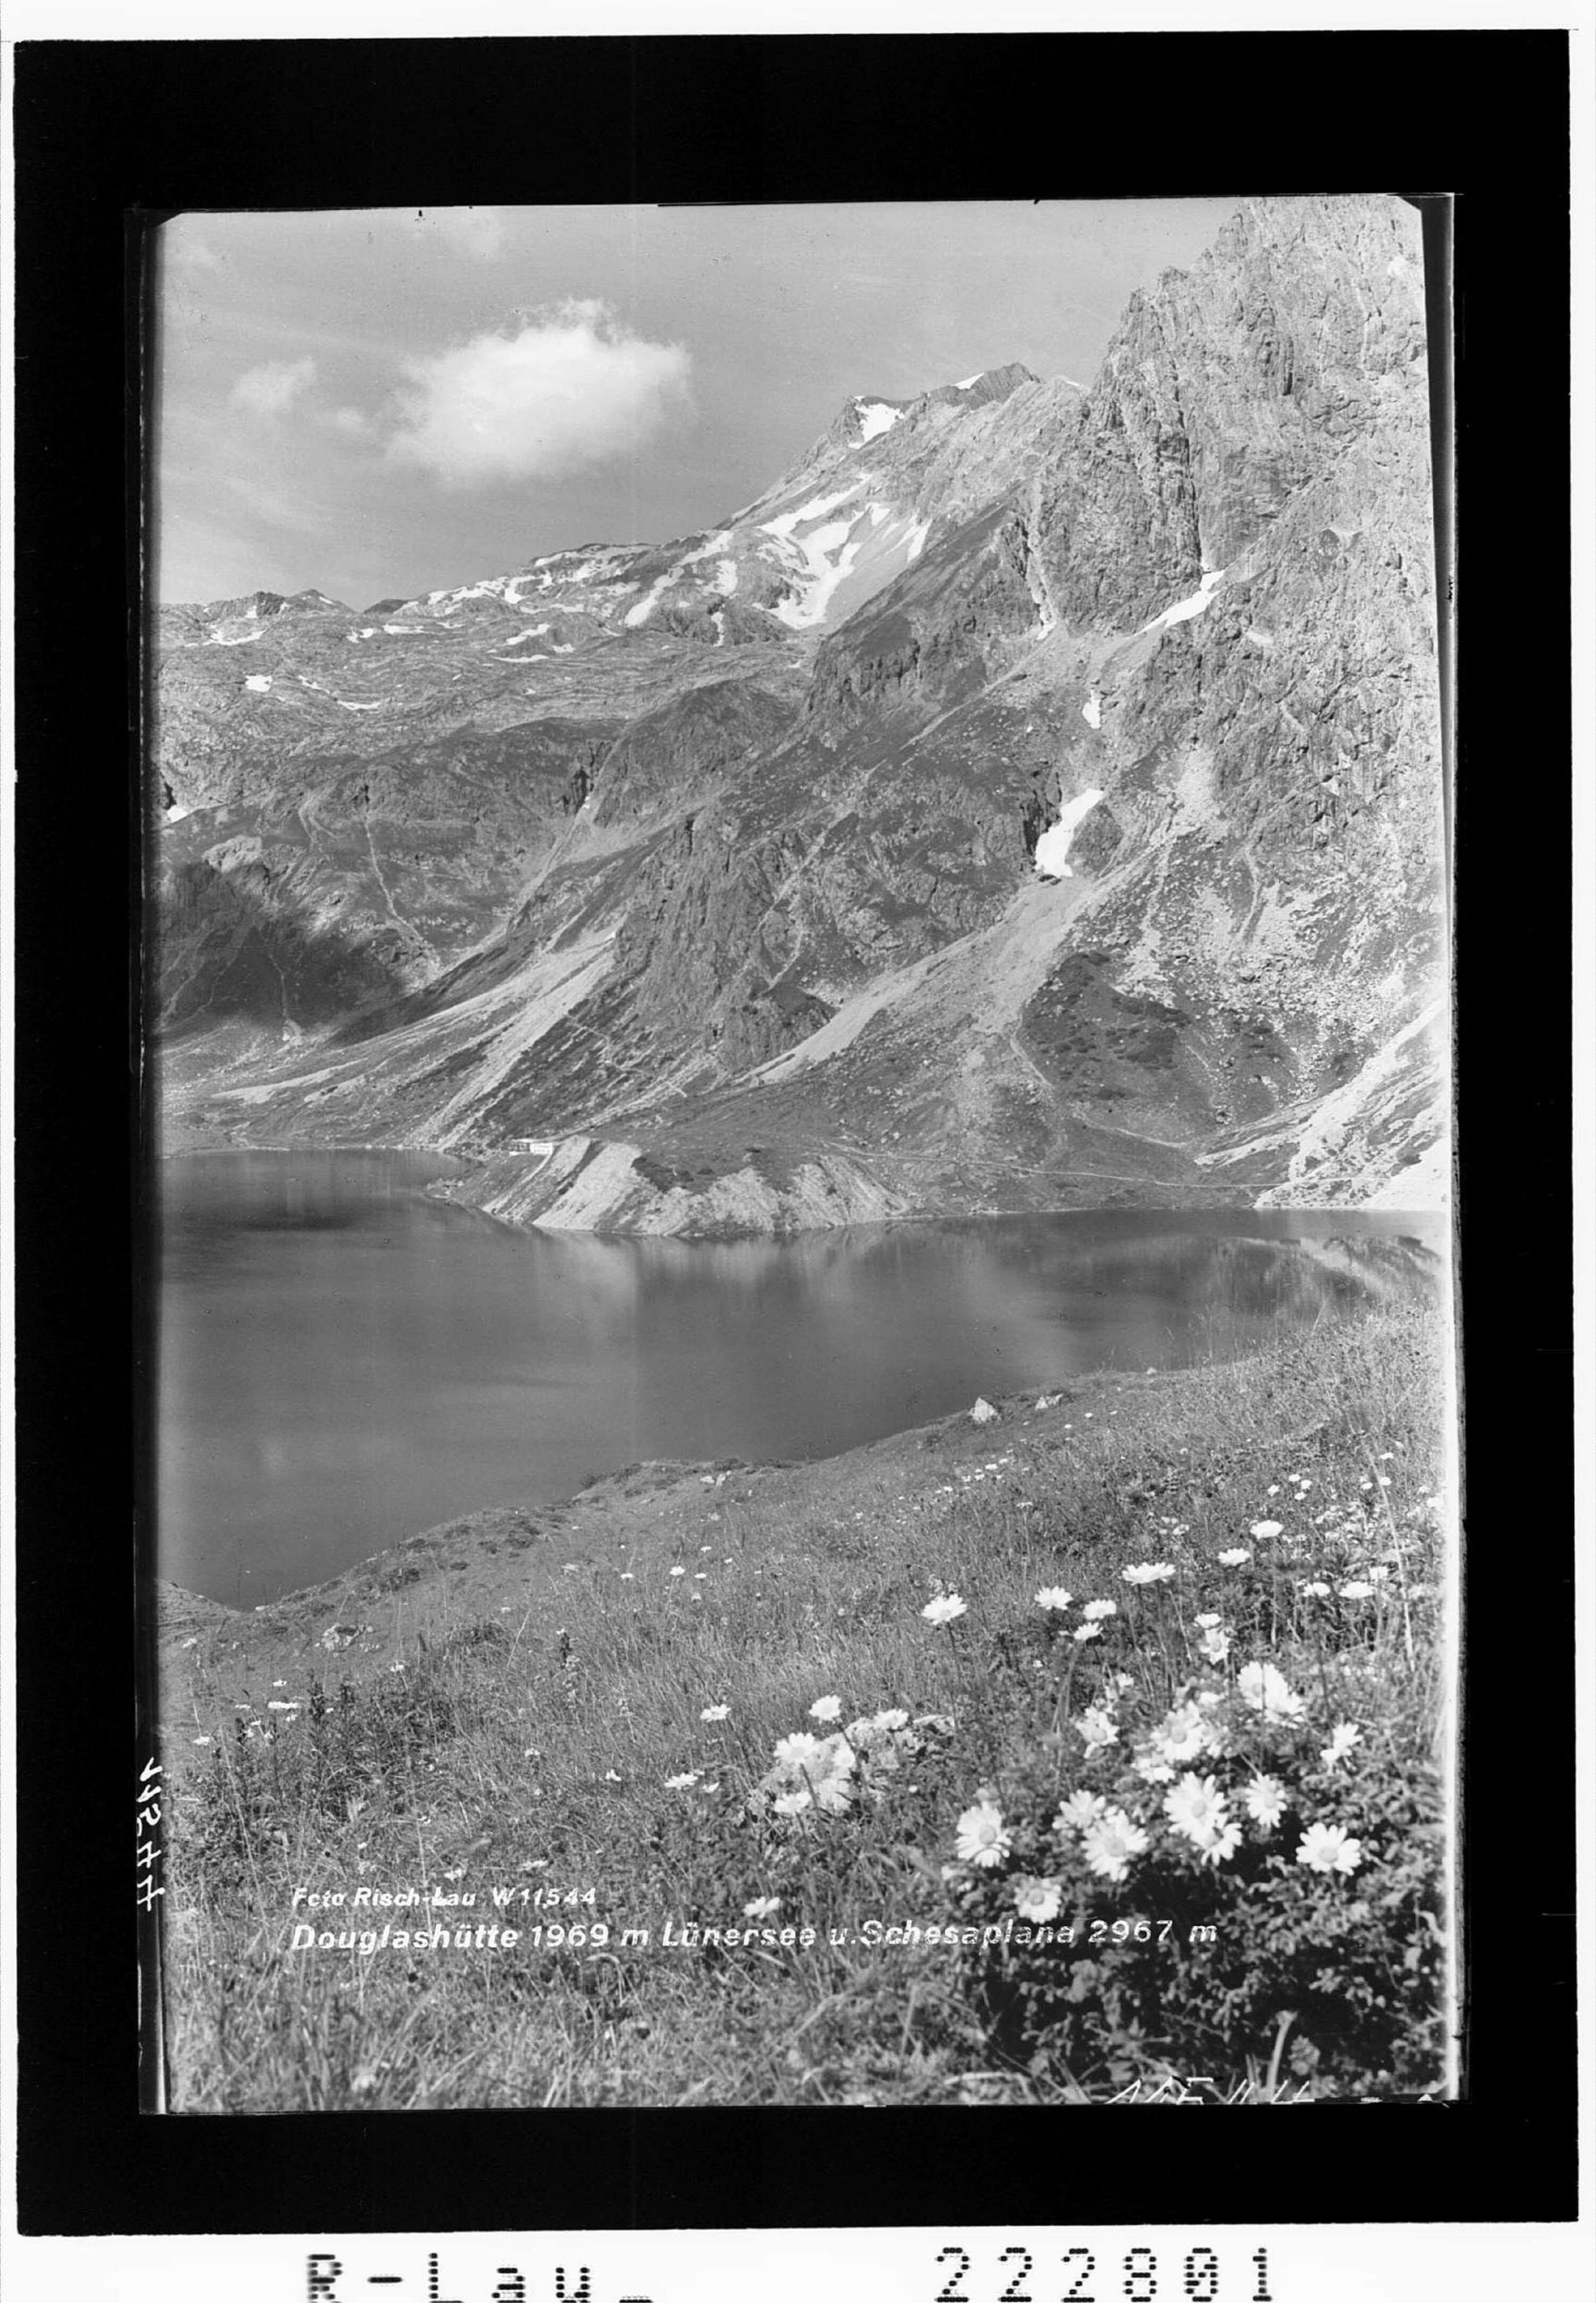 Douglashütte 1969 m mit Lünersee und Schesaplana 2967 m></div>


    <hr>
    <div class=